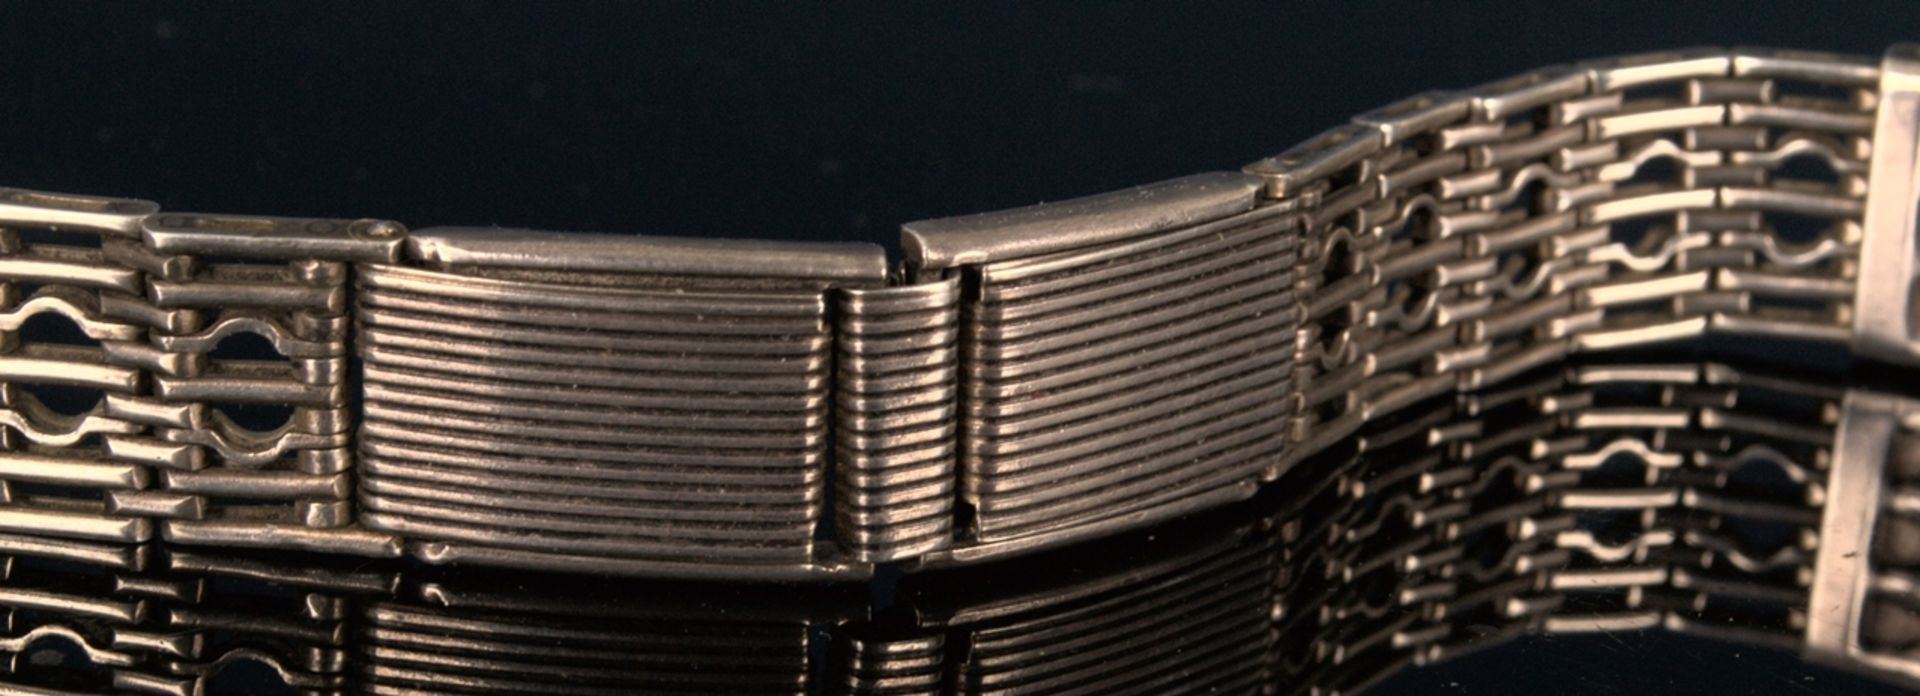 Russisches Armband für eine Herrenarmbanduhr, mehrgliedriges, teilweise durchbrochen gearbeitetes - Bild 4 aus 11